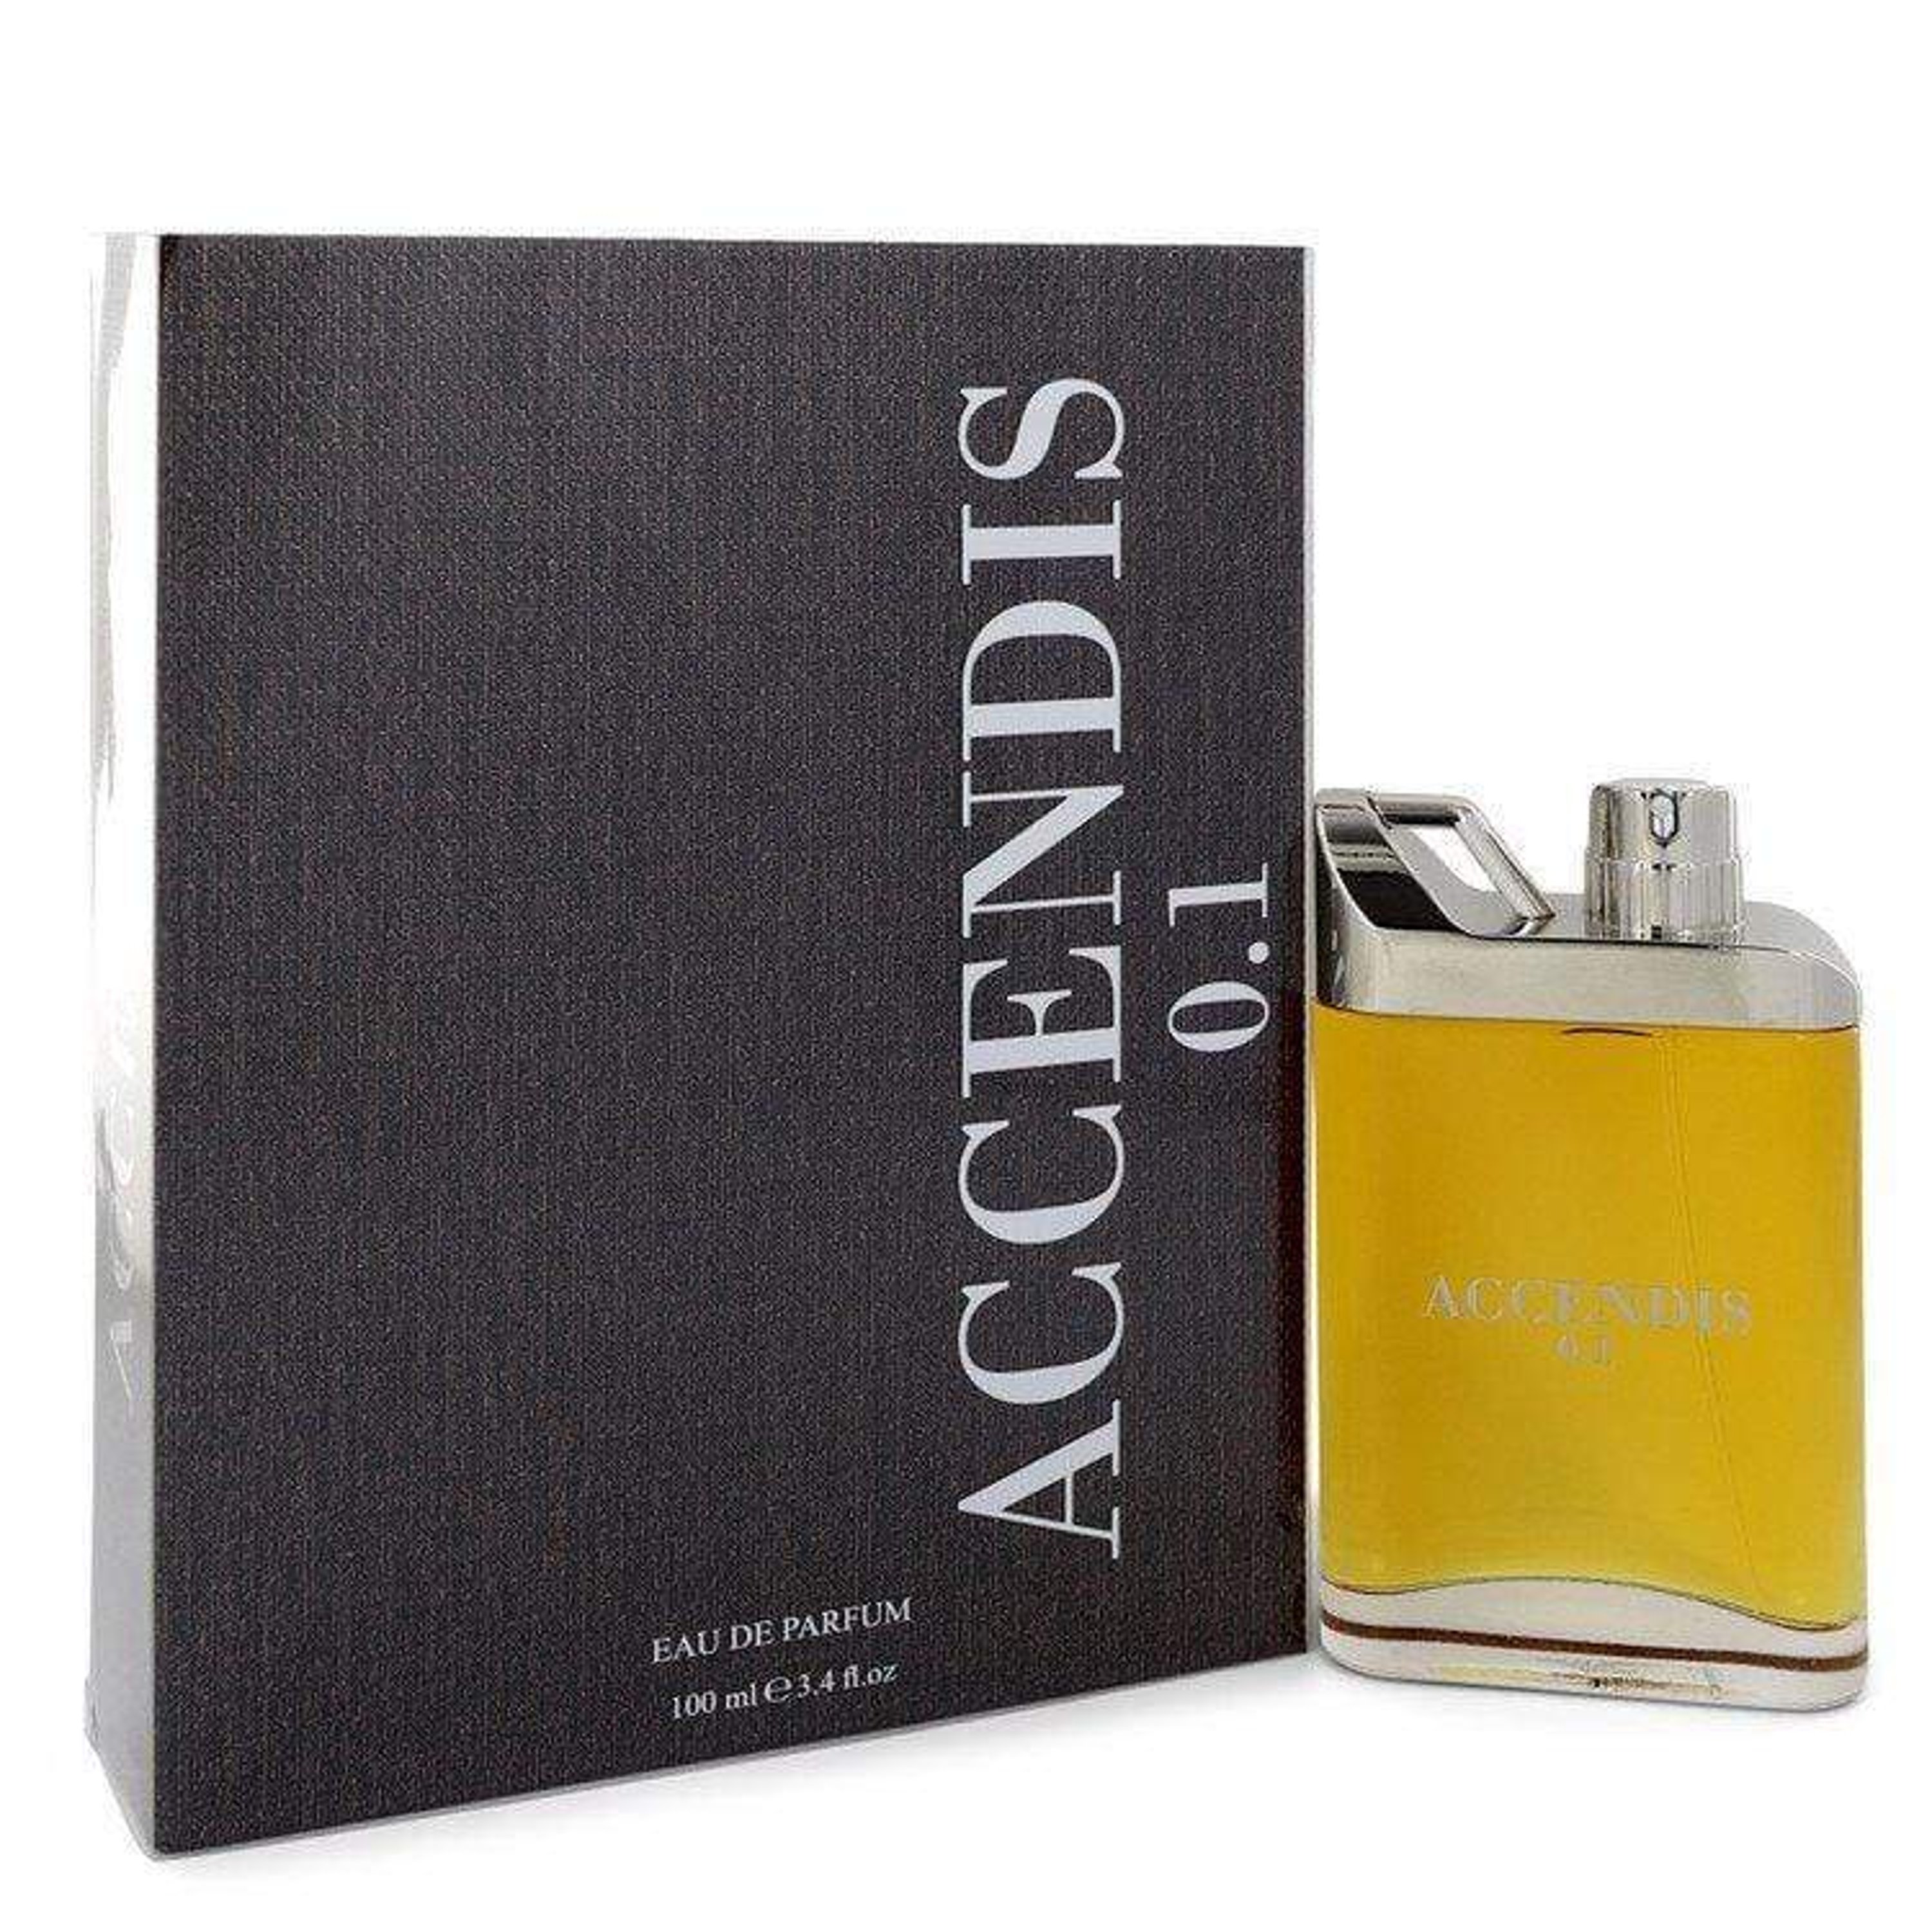 Accendis 0.1 By  Eau De Parfum Spray (unisex) 3.4 oz For Women